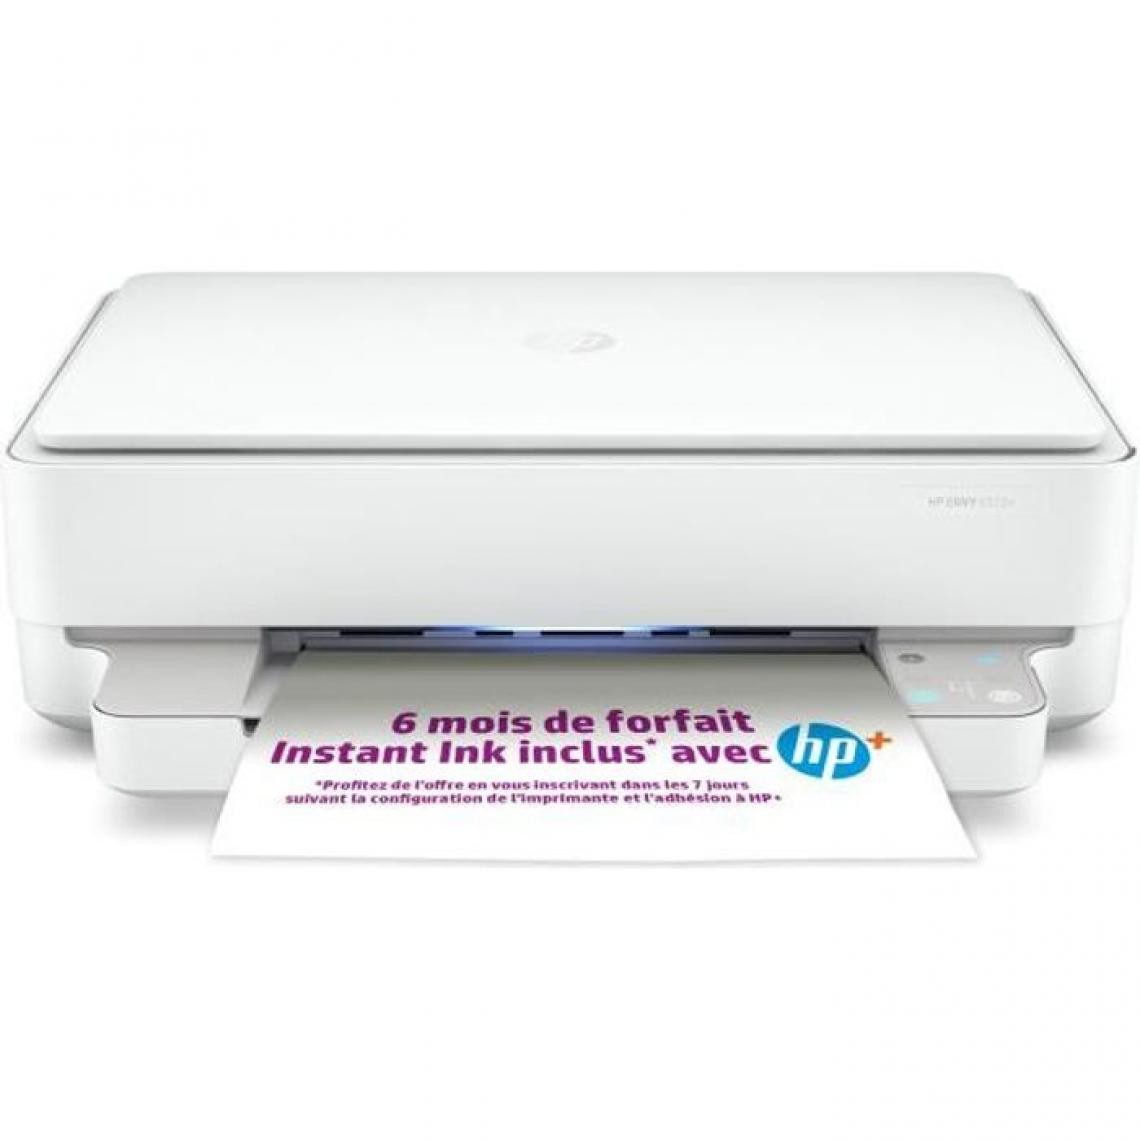 Hp - Imprimante Multifonction - HP - Envy 6022e - Jet d'encre Instant ink ready - A4 - 223N5B#629 - Imprimante Jet d'encre